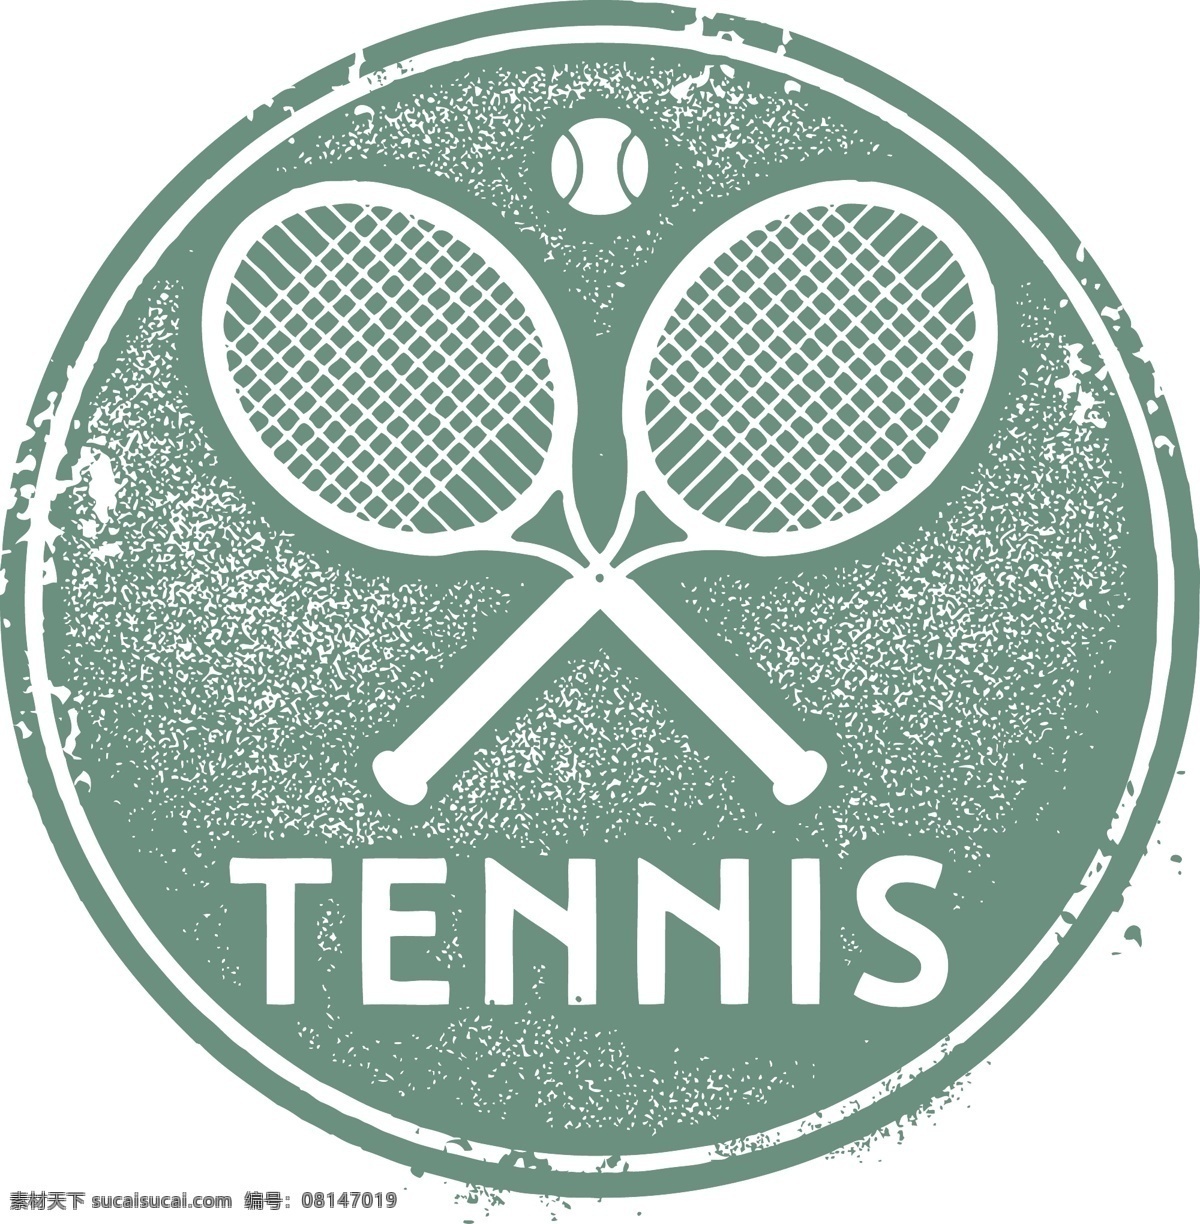 网球 用品 体育运动 网球拍 网球运动 网球标志 网球图标 网球设计 打网球 体育 体育项目 时尚背景 绚丽背景 背景素材 背景图案 矢量背景 背景设计 抽象背景 抽象设计 卡通背景 矢量设计 卡通设计 艺术设计 体育设计 文化艺术 矢量